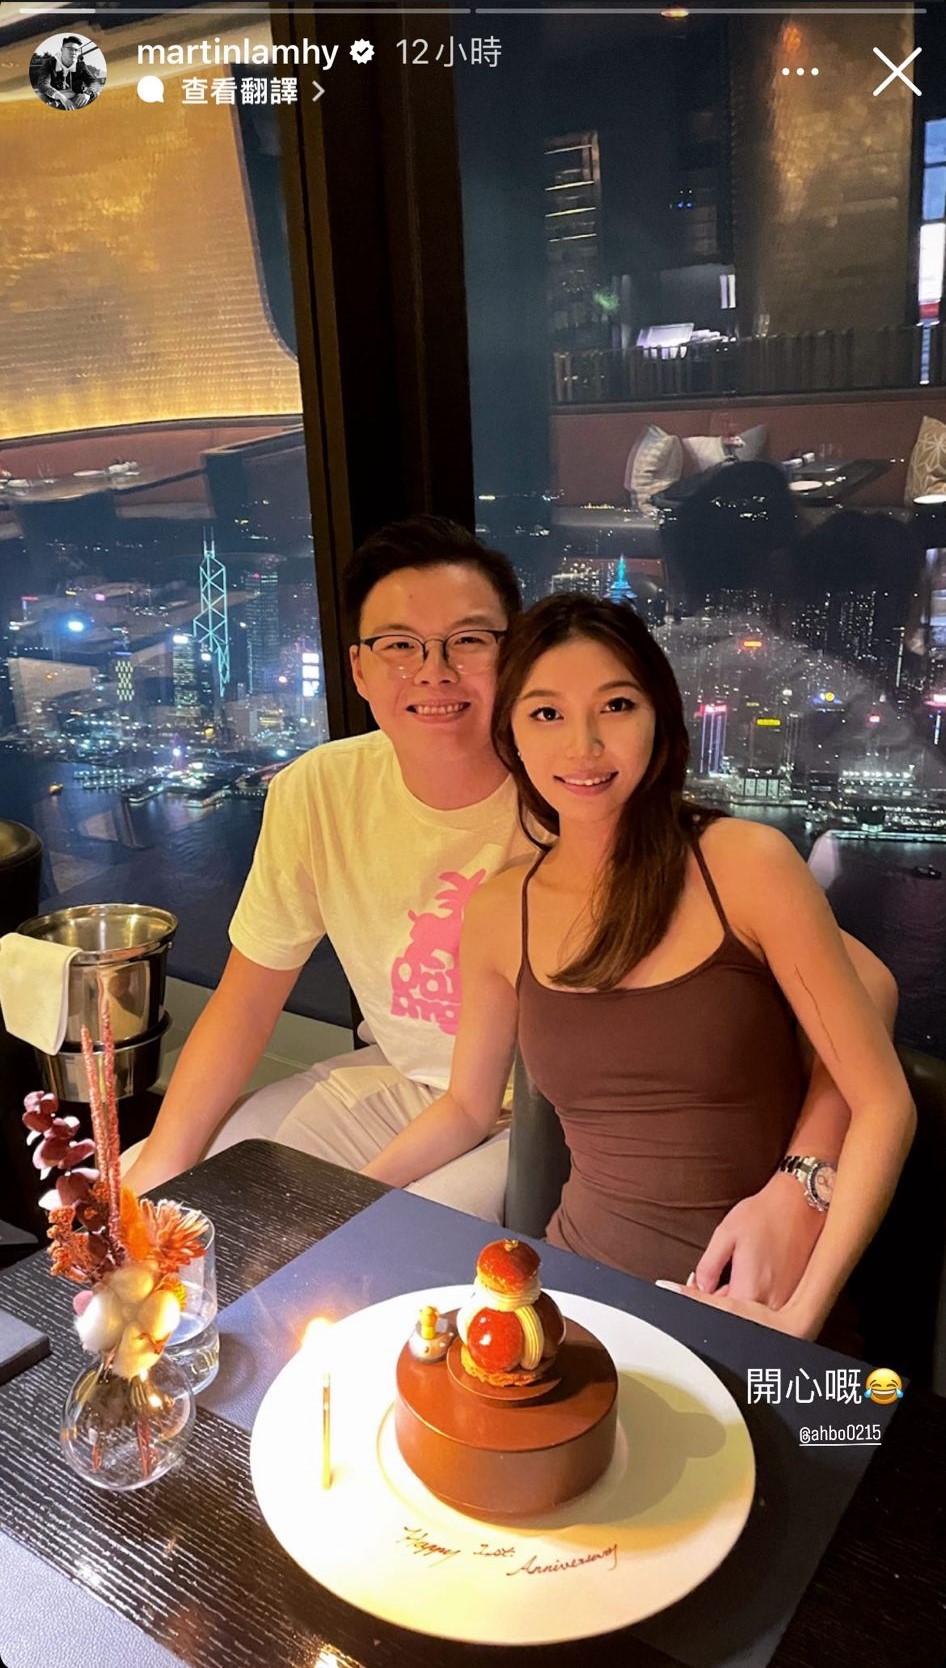 林浩贤昨晚（15日）于IG Story高调晒与女友「ahbo0215」的合照，庆祝二人拍拖一周年。